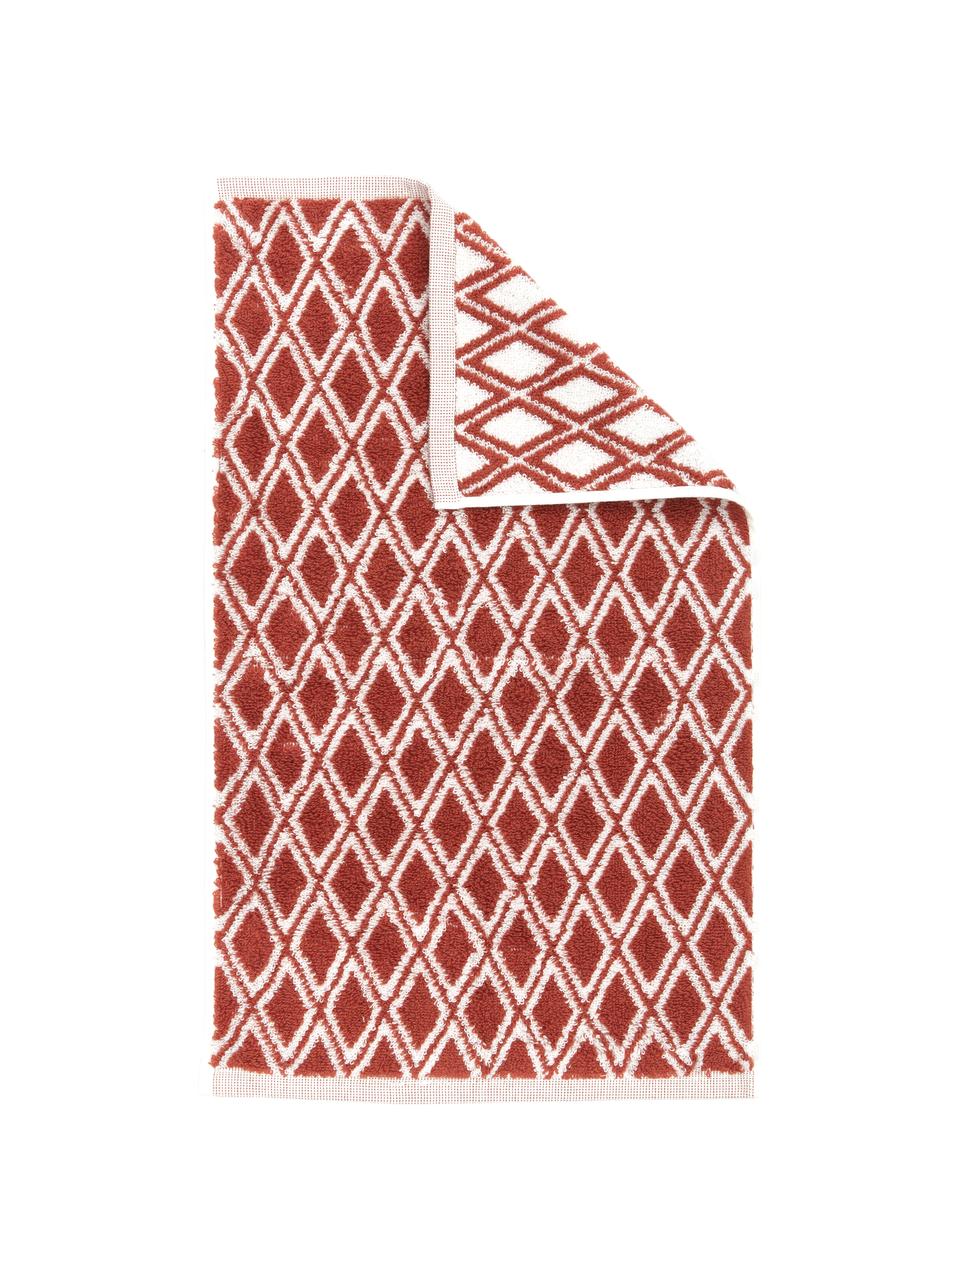 Wende-Handtuch Ava mit grafischem Muster, 100% Baumwolle, mittelschwere Qualität 550 g/m², Terrakotta, Cremeweiß, Gästehandtuch